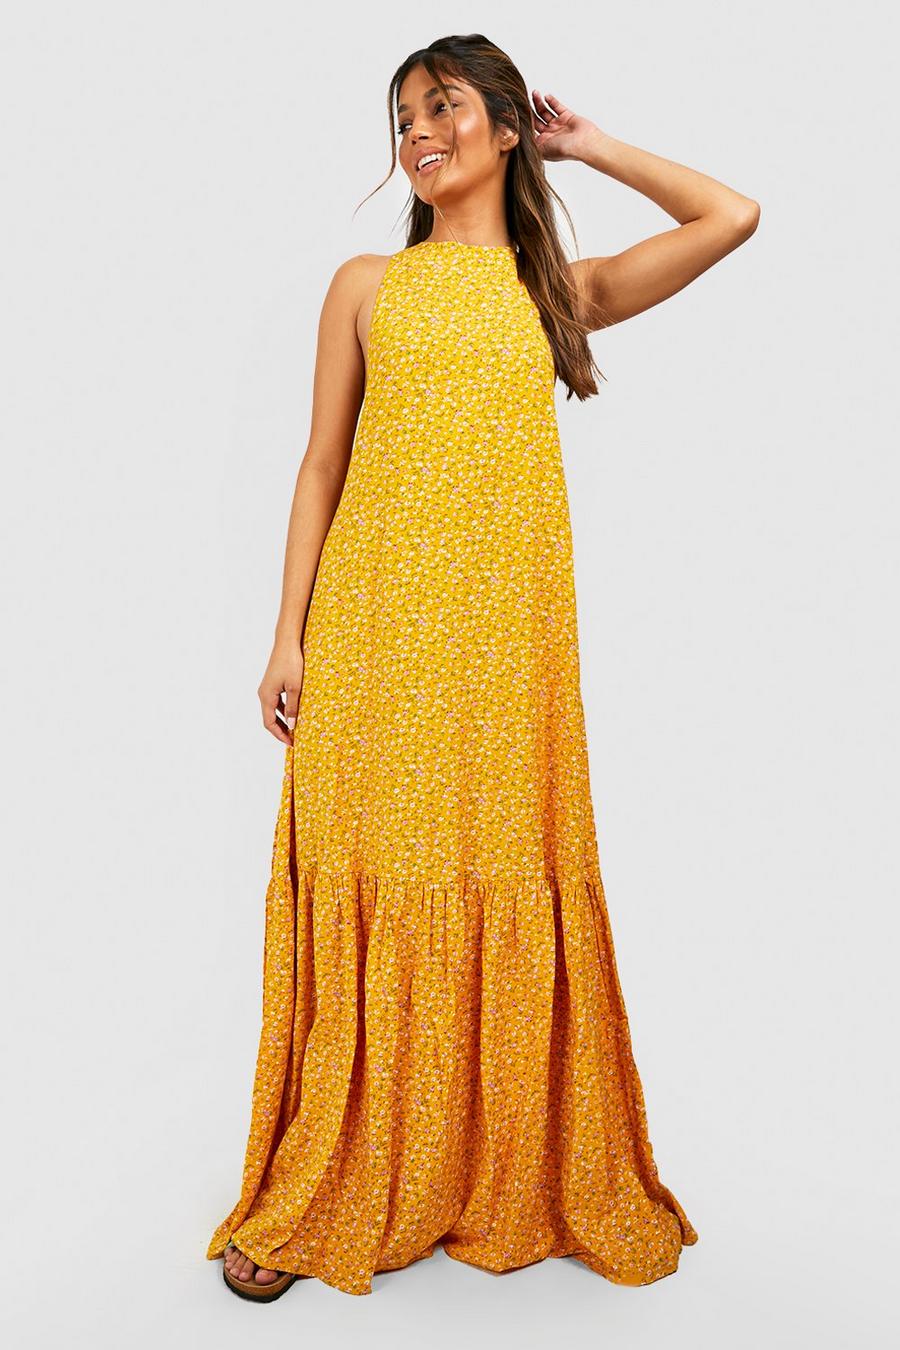 חרדל giallo שמלת מקסי פרחונית עם מכפלת מדורגת וצווארון גבוה